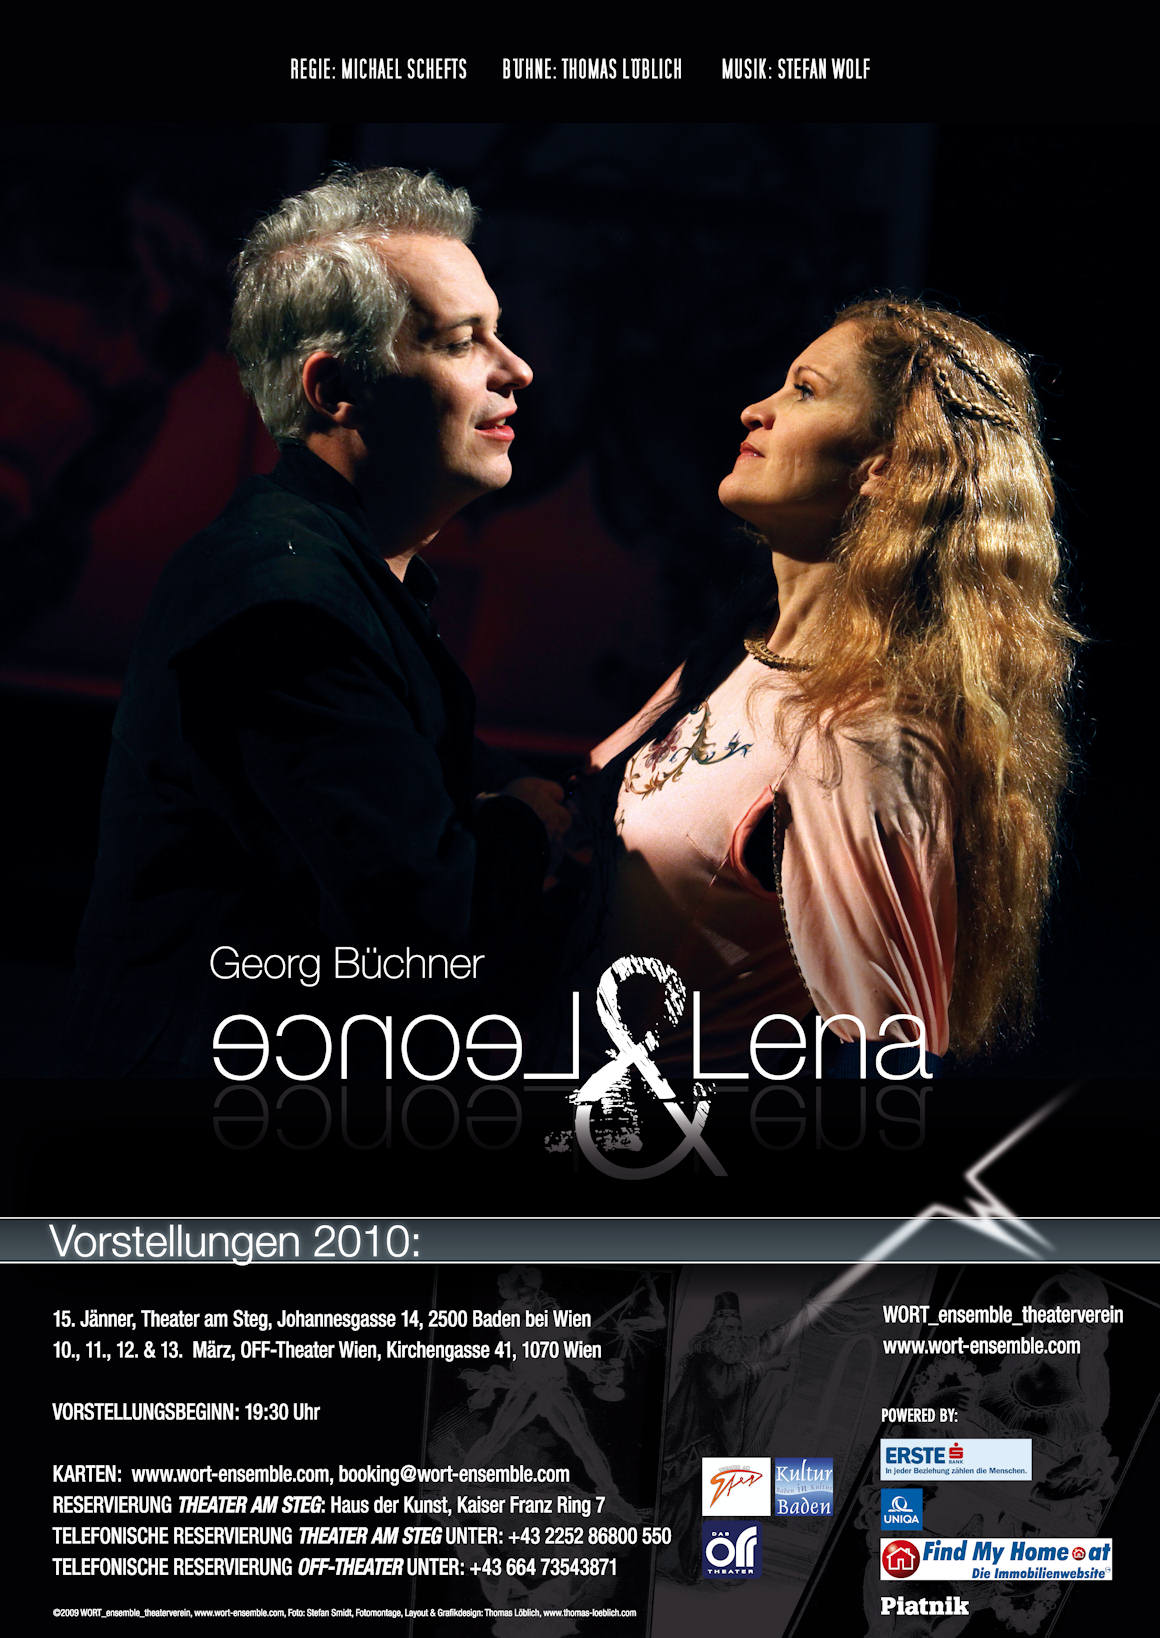 Das Aushangplakat zu Georg Büchners "Leonce & Lena"